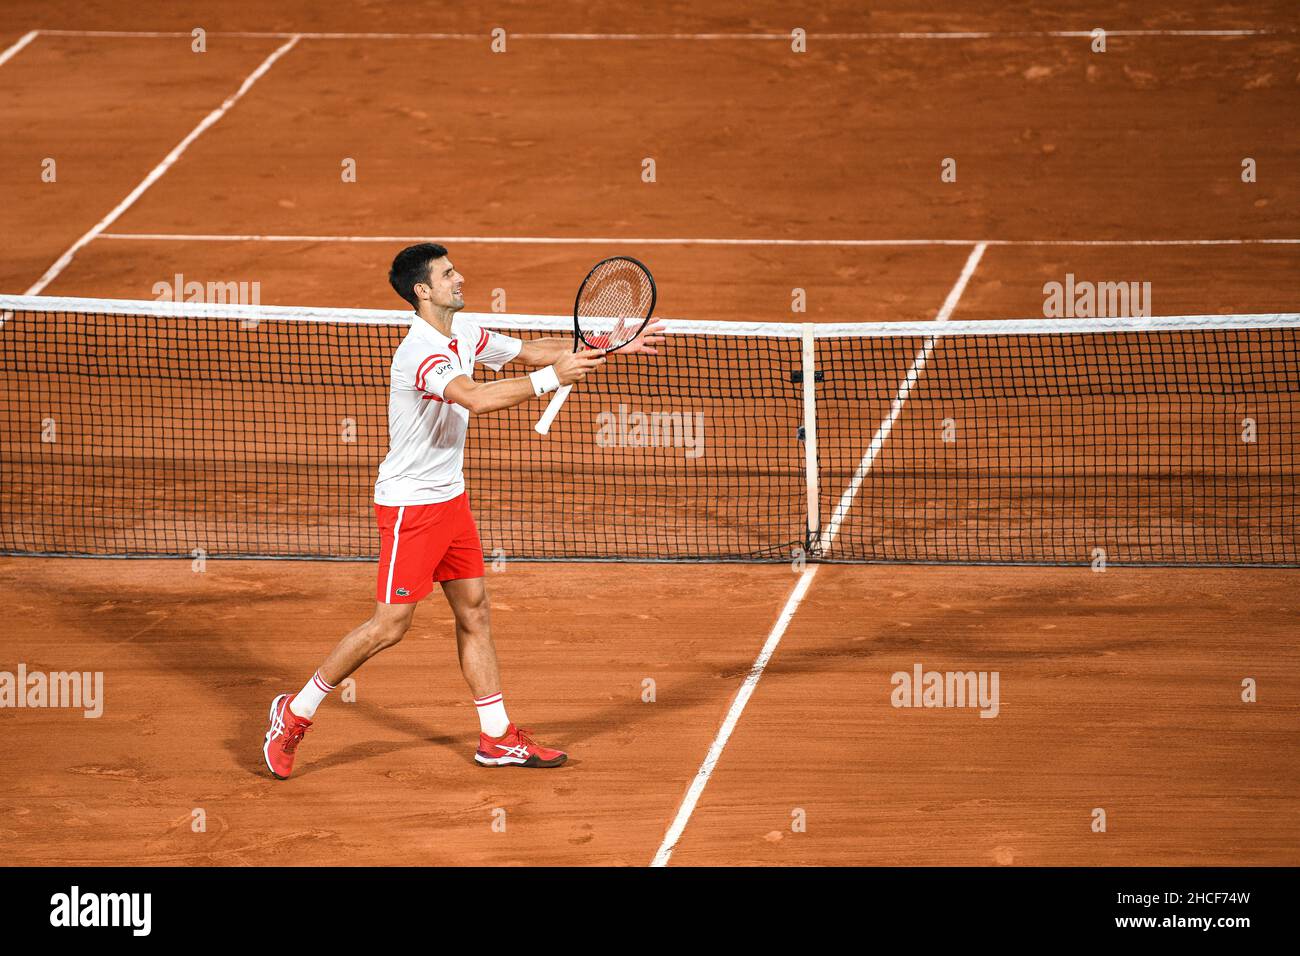 Novak Djokovic contre Rafael Nadal lors de la demi-finale du tournoi de tennis Roland-Garros 2021, Grand Chelem, le 11 juin 2021. Banque D'Images